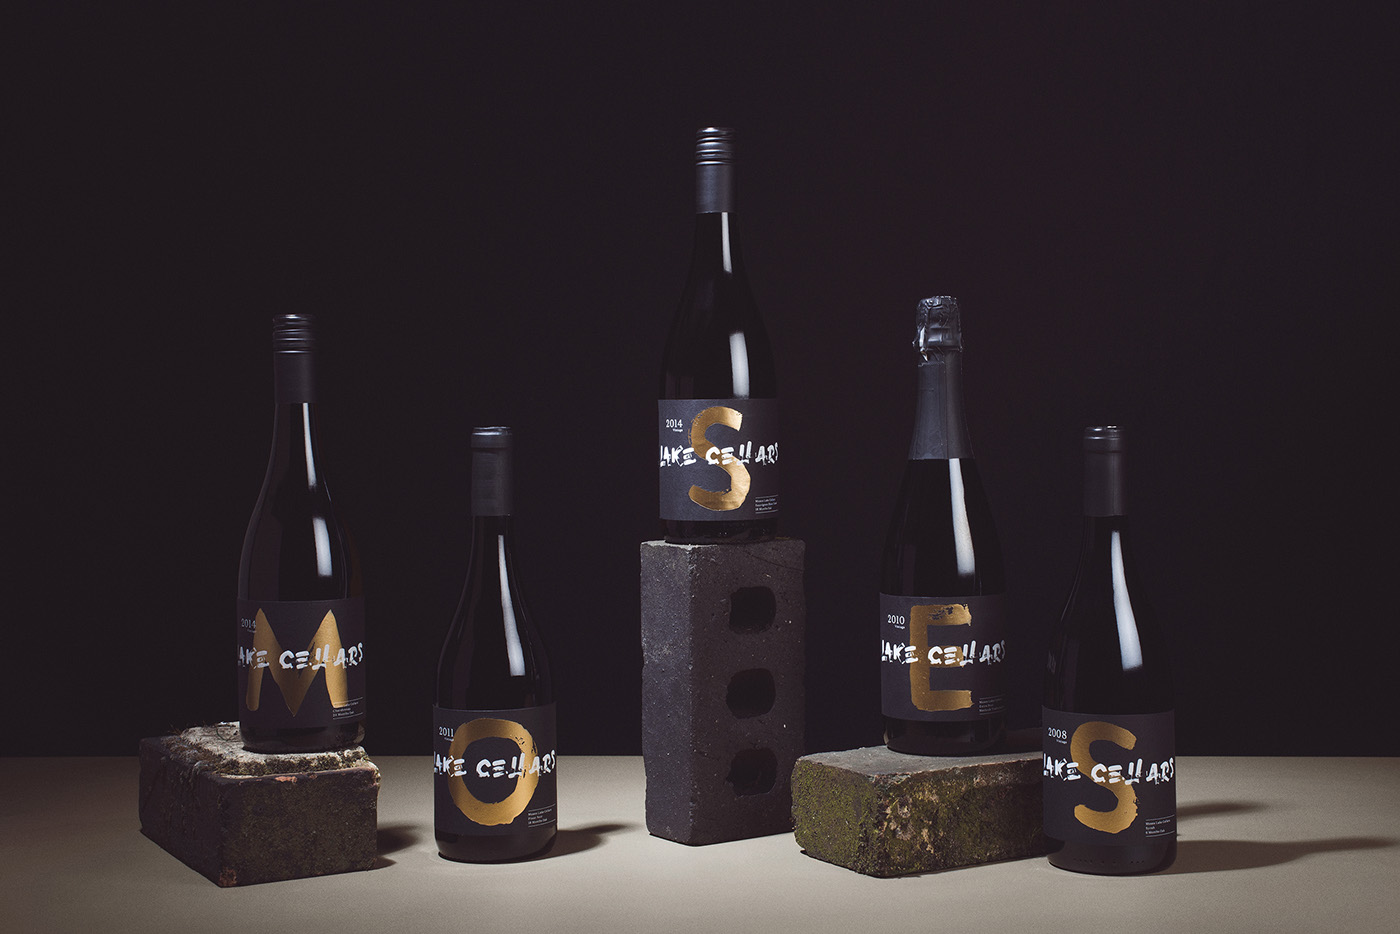 笔刷字体样式的葡萄酒包装设计